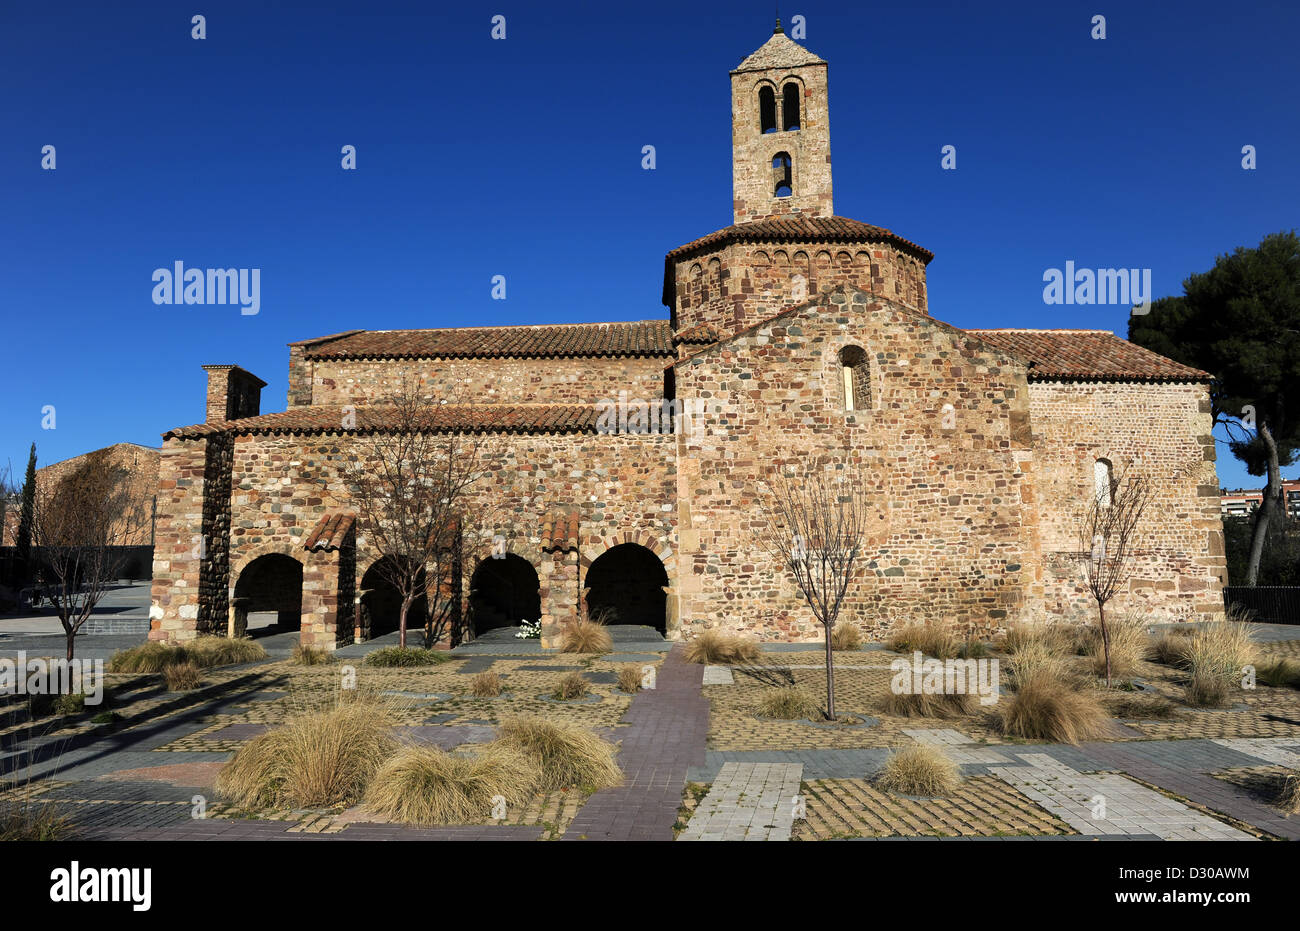 Arte Románico en España. Siglo 12. Iglesia de Santa María. Exterior. Tarrasa. Cataluña. Foto de stock